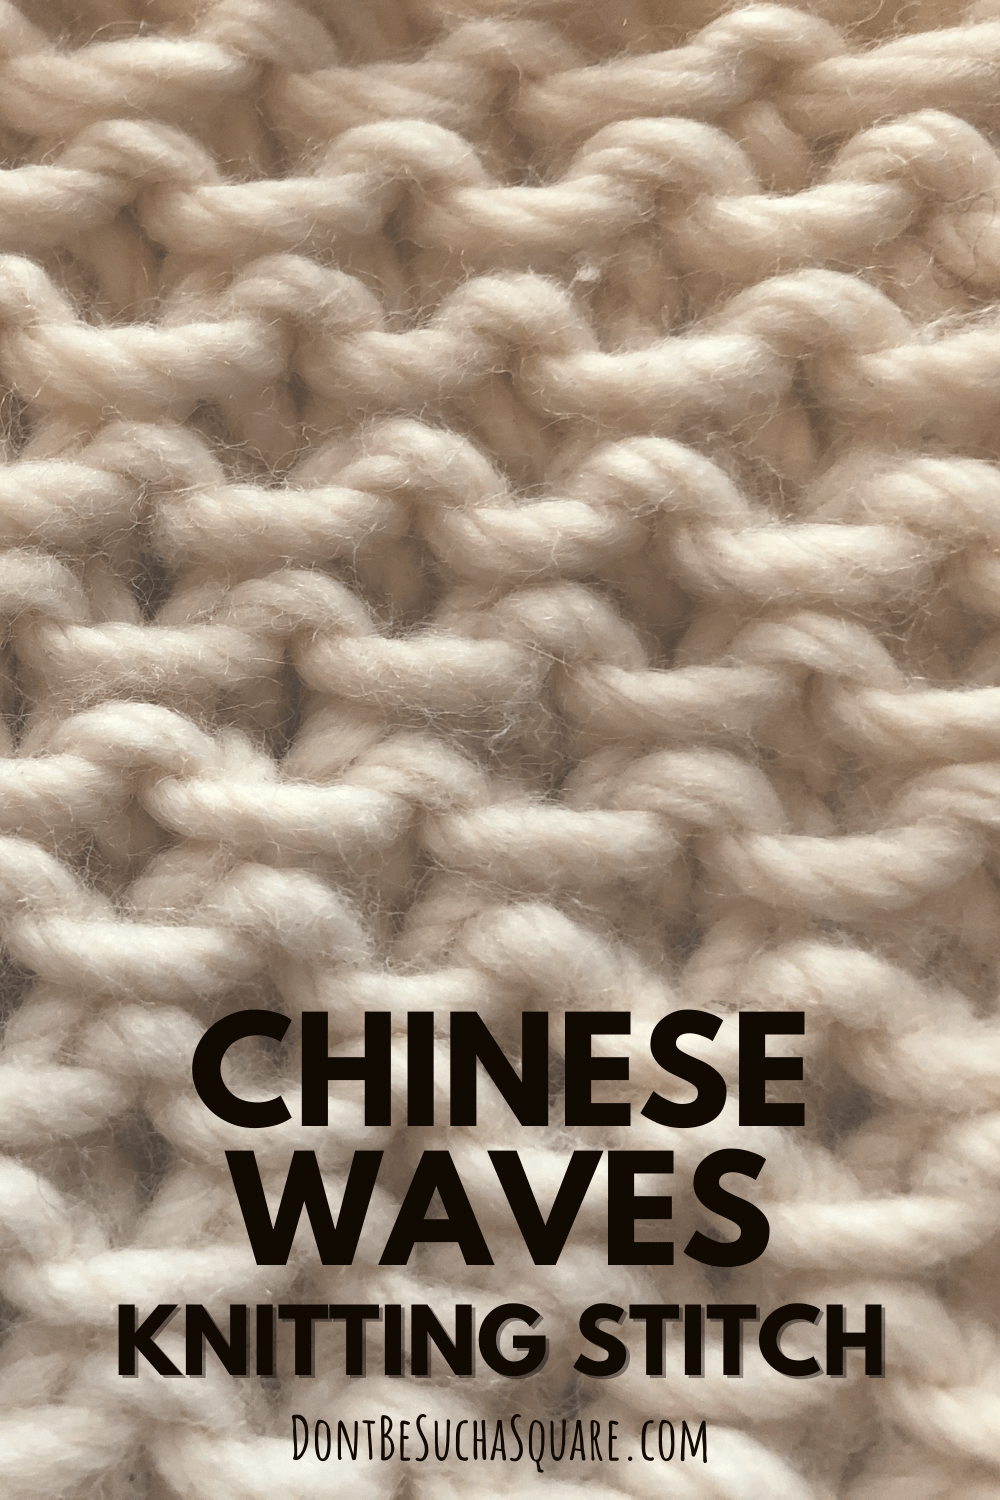 Chinese waves knitting stitch pattern